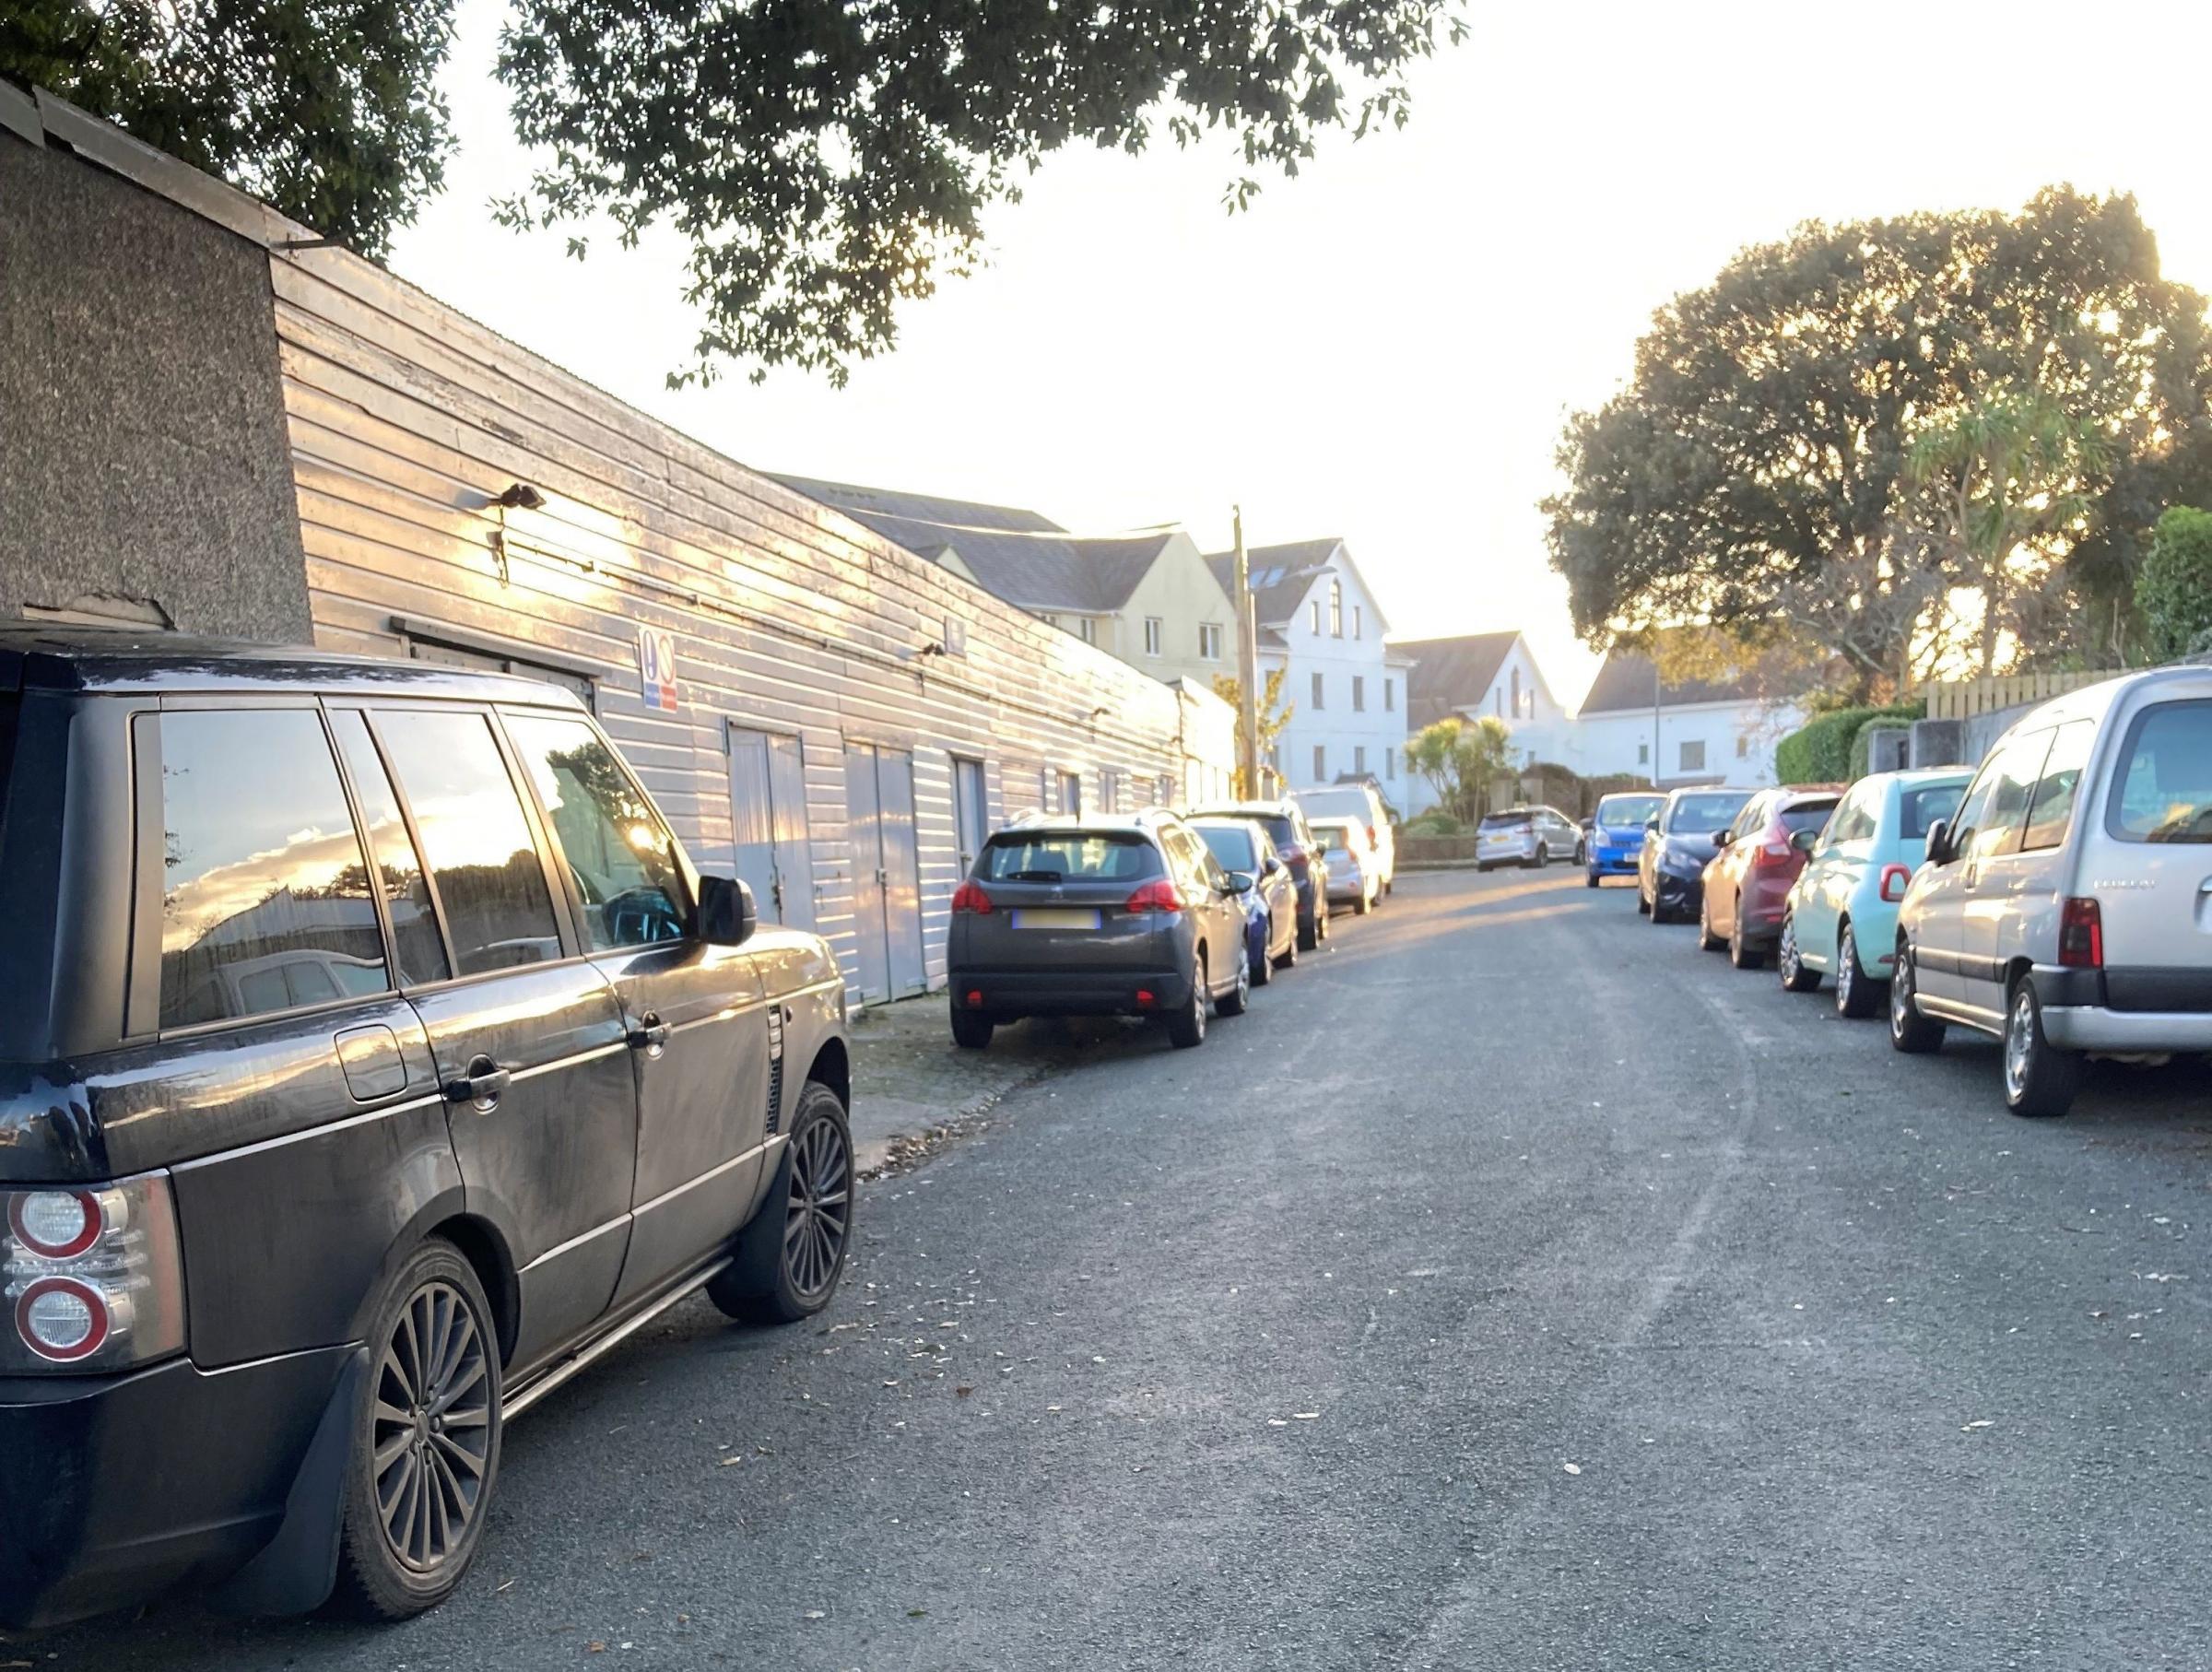 Parking around the garages in Emslie Road